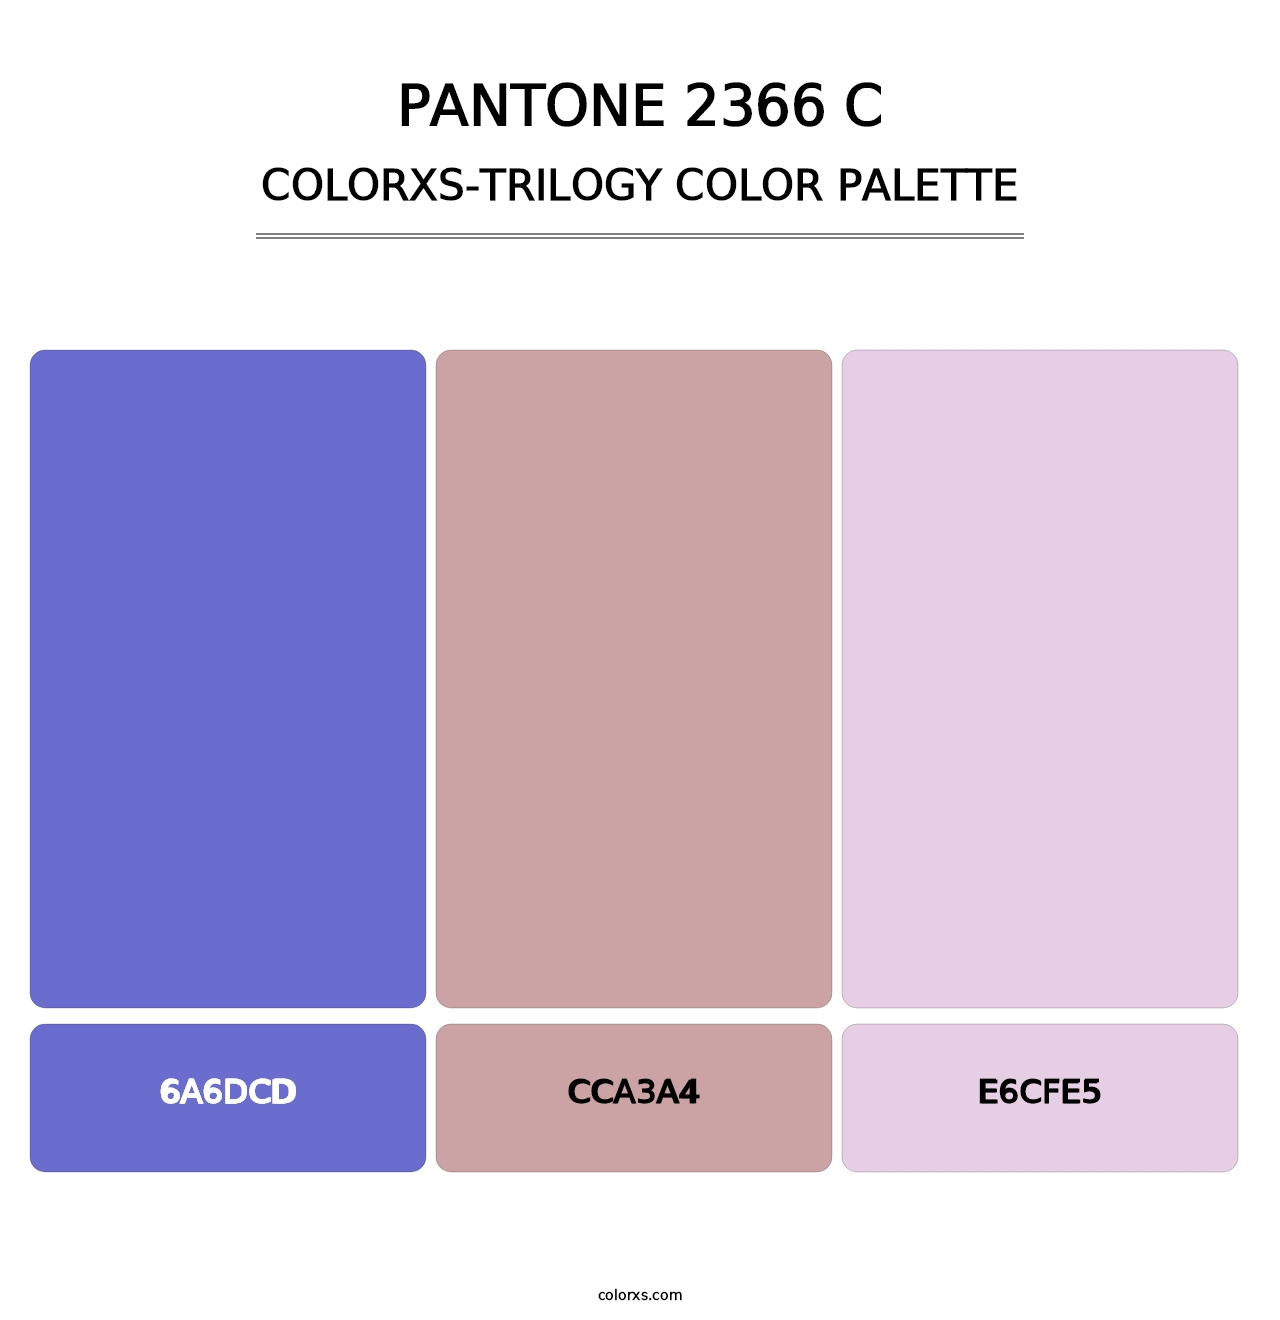 PANTONE 2366 C - Colorxs Trilogy Palette